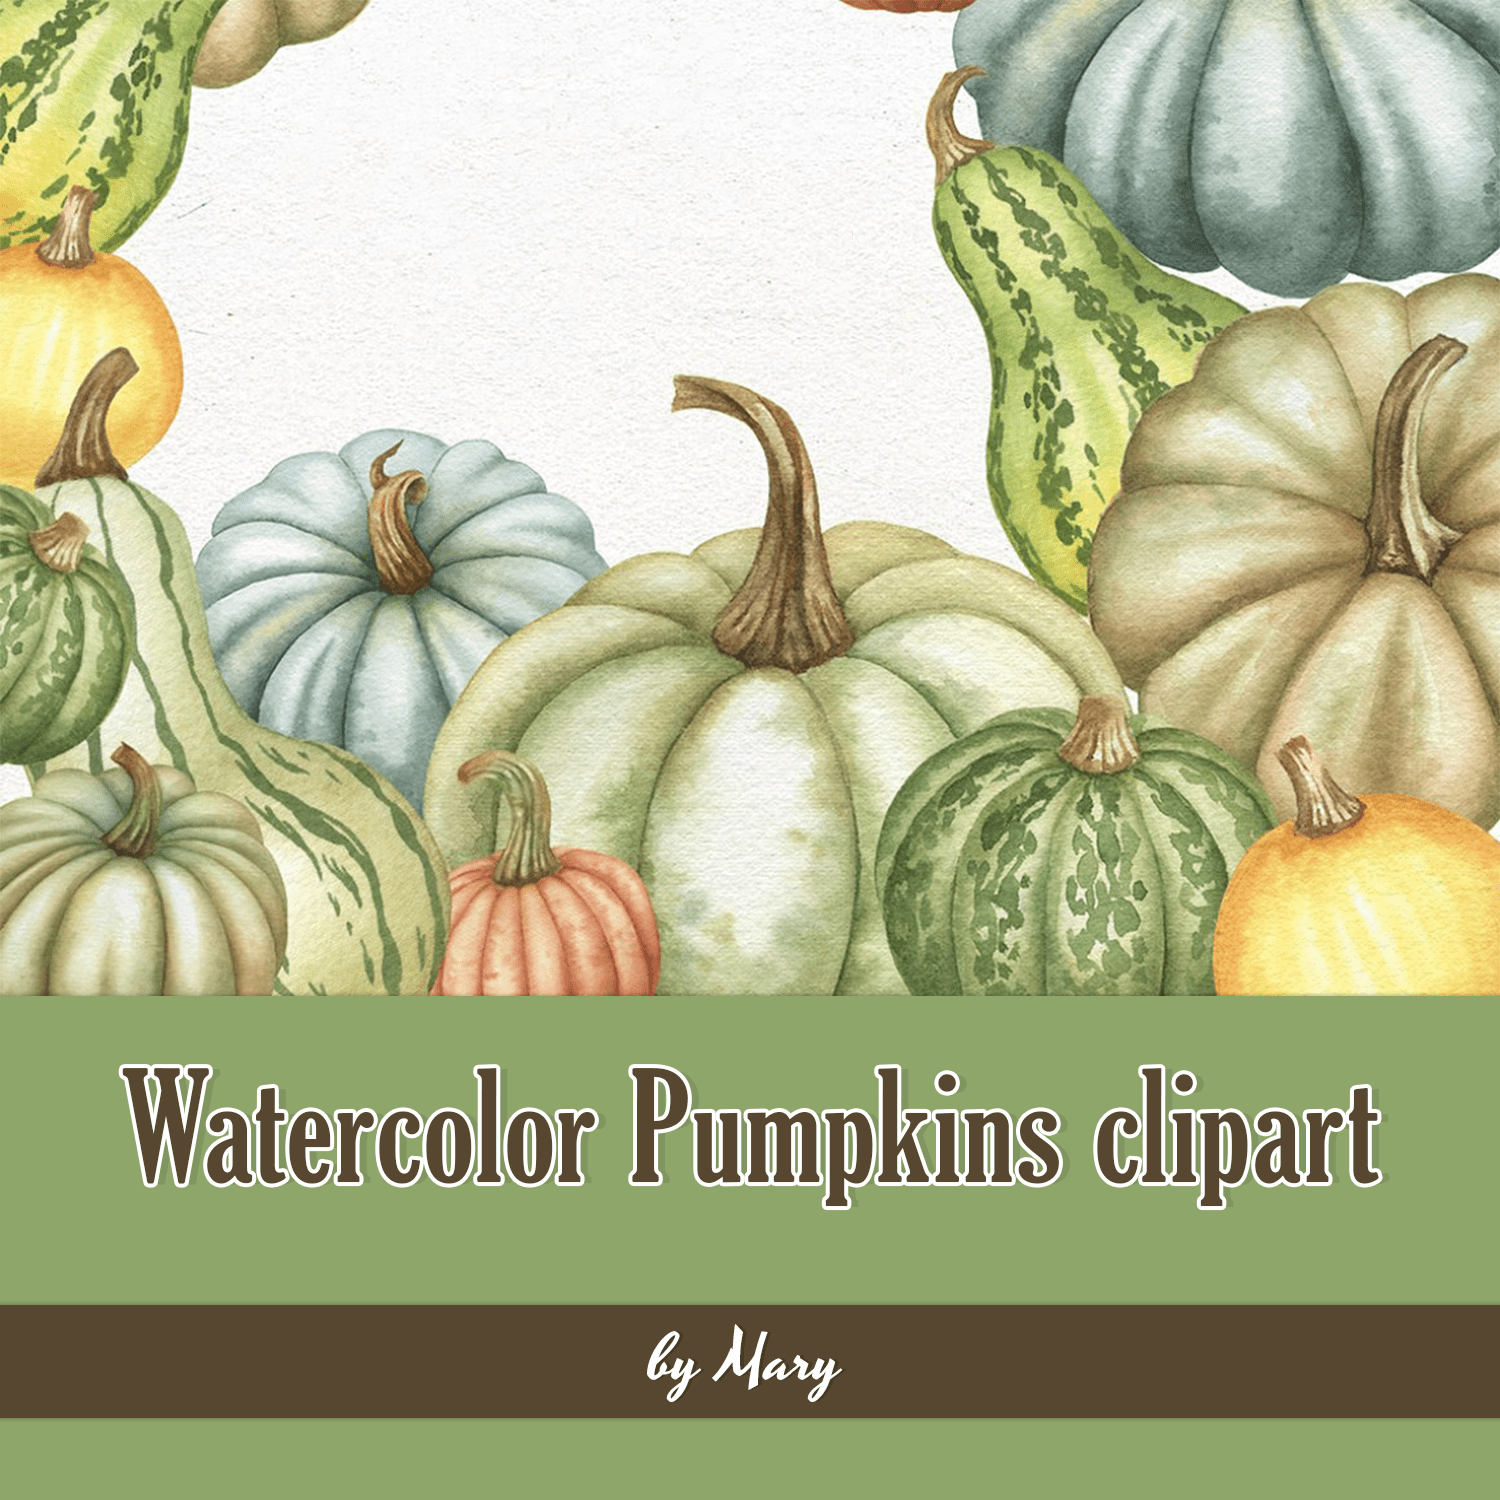 Watercolor Pumpkins clipart.